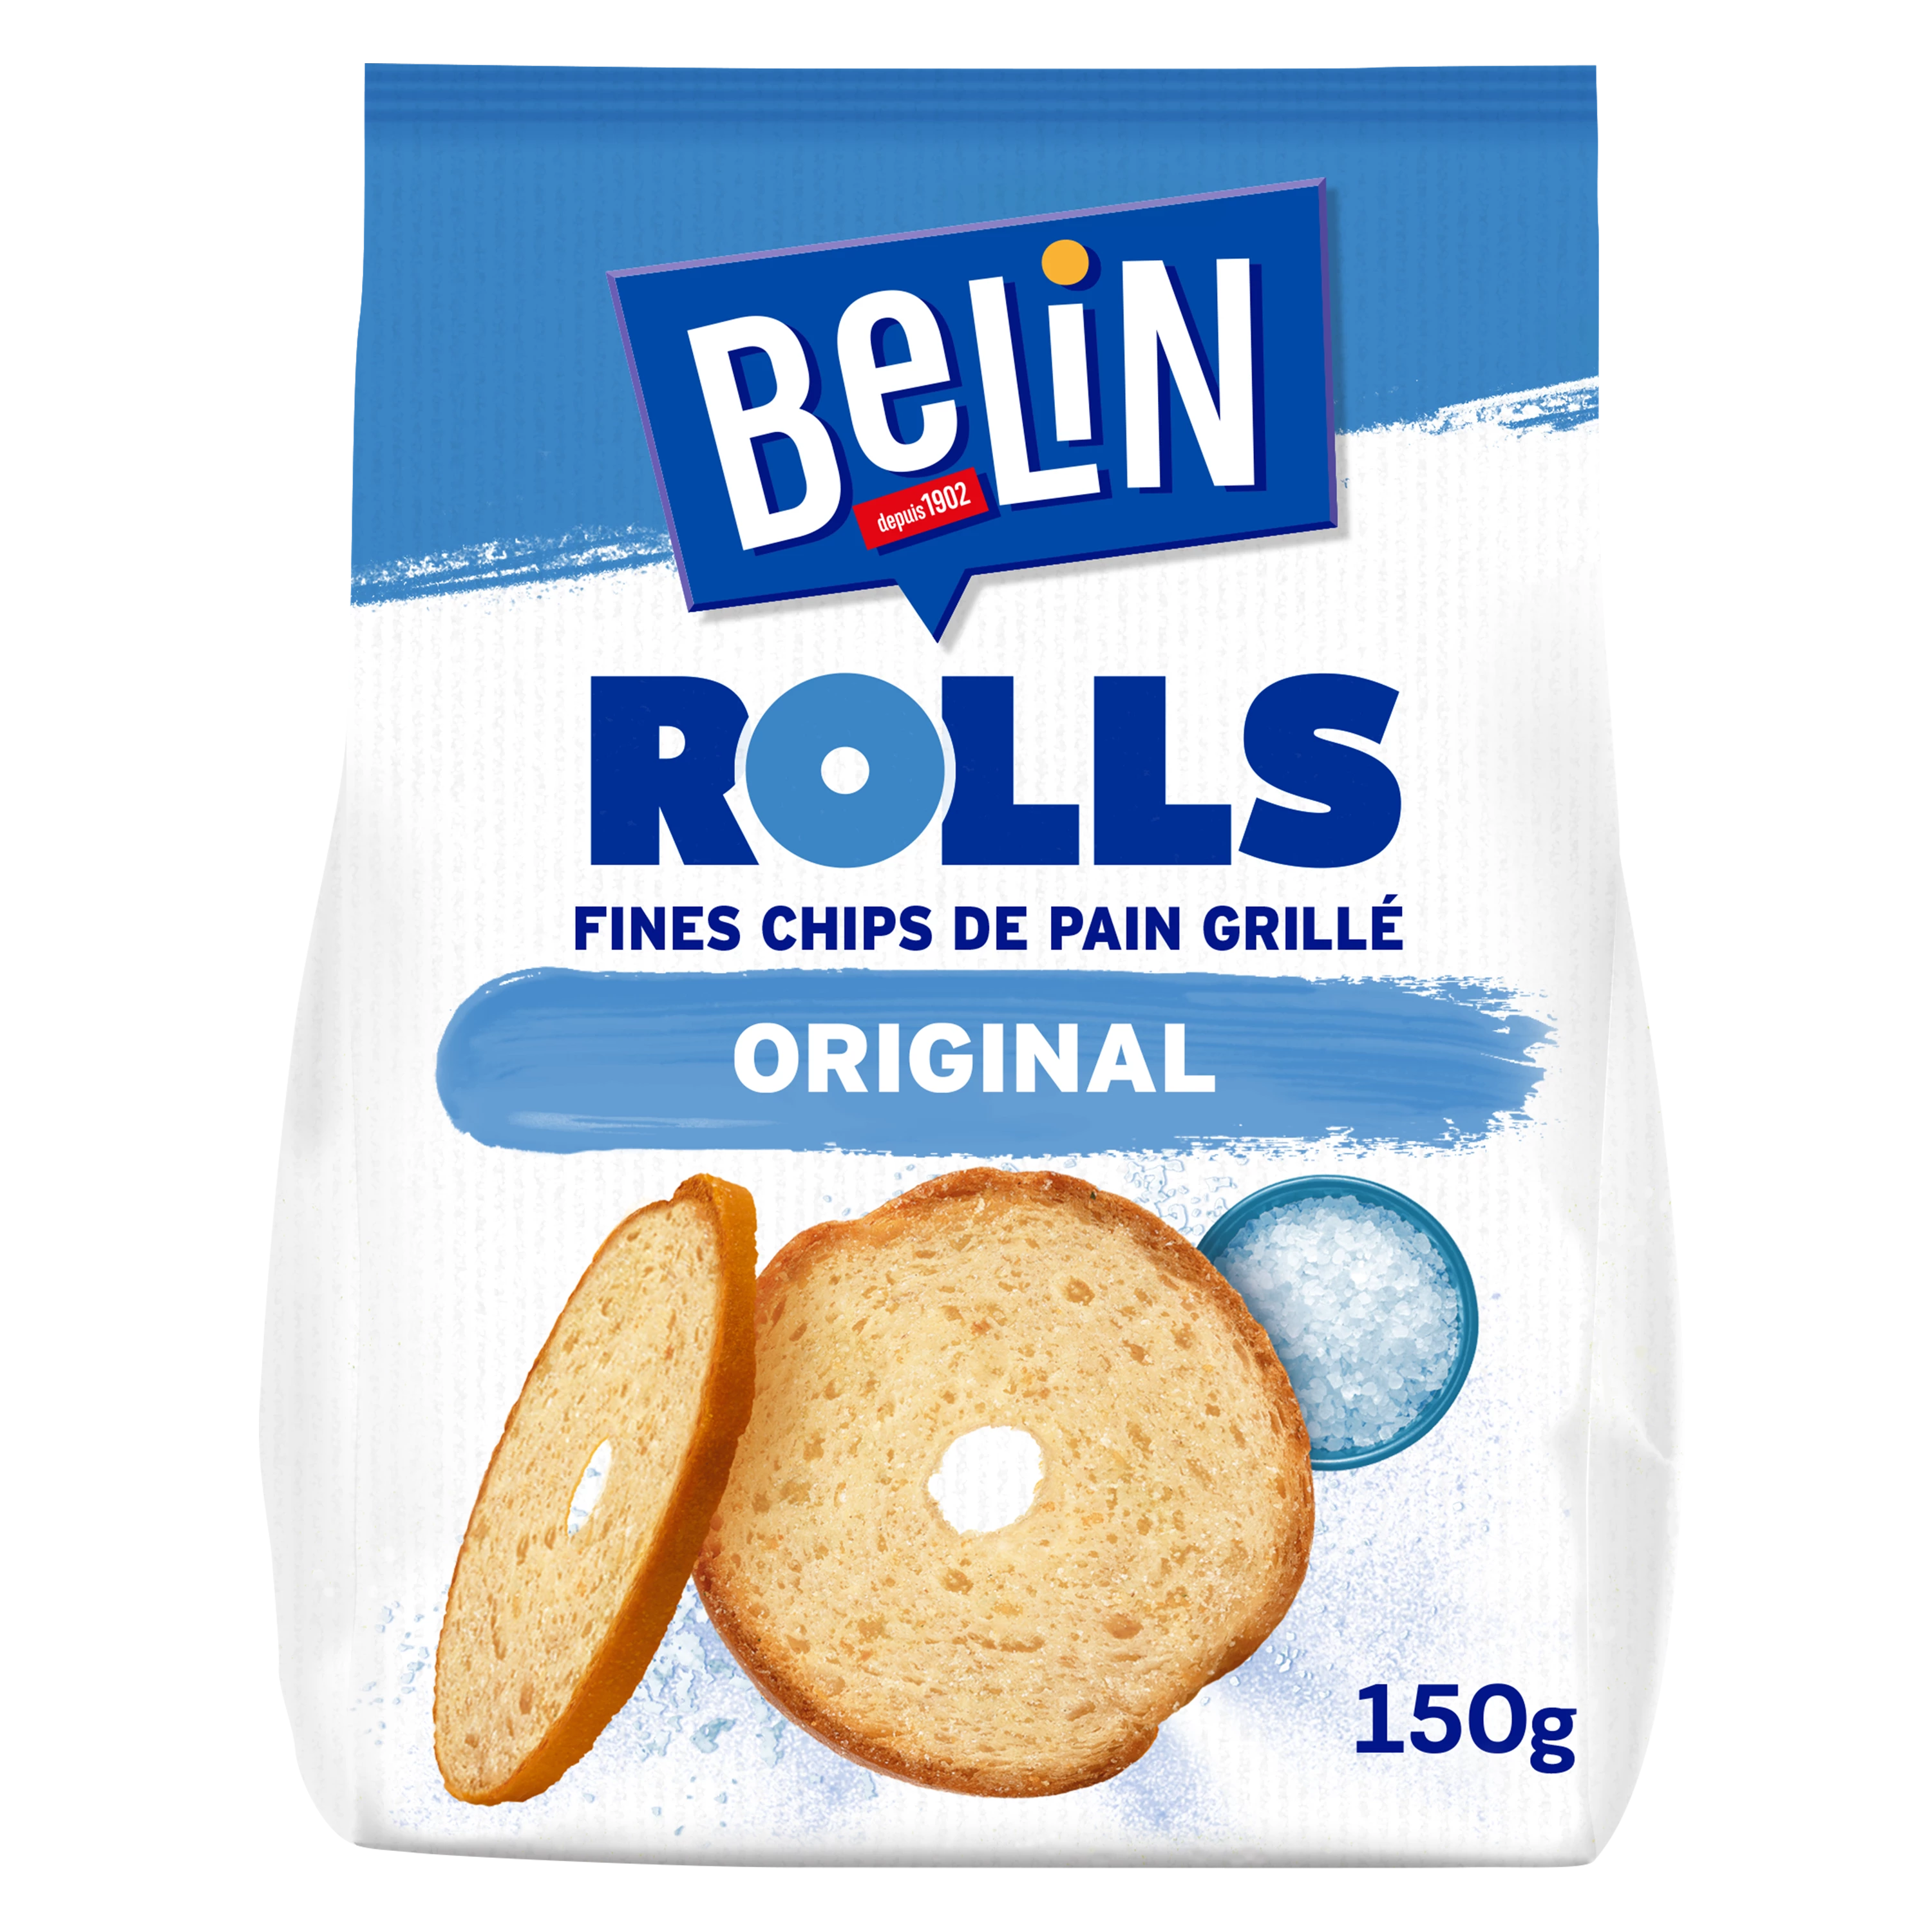 Biscuits Apéritifs Fines Chips de Pain Grillé Original Rolls, 150g  - BELIN